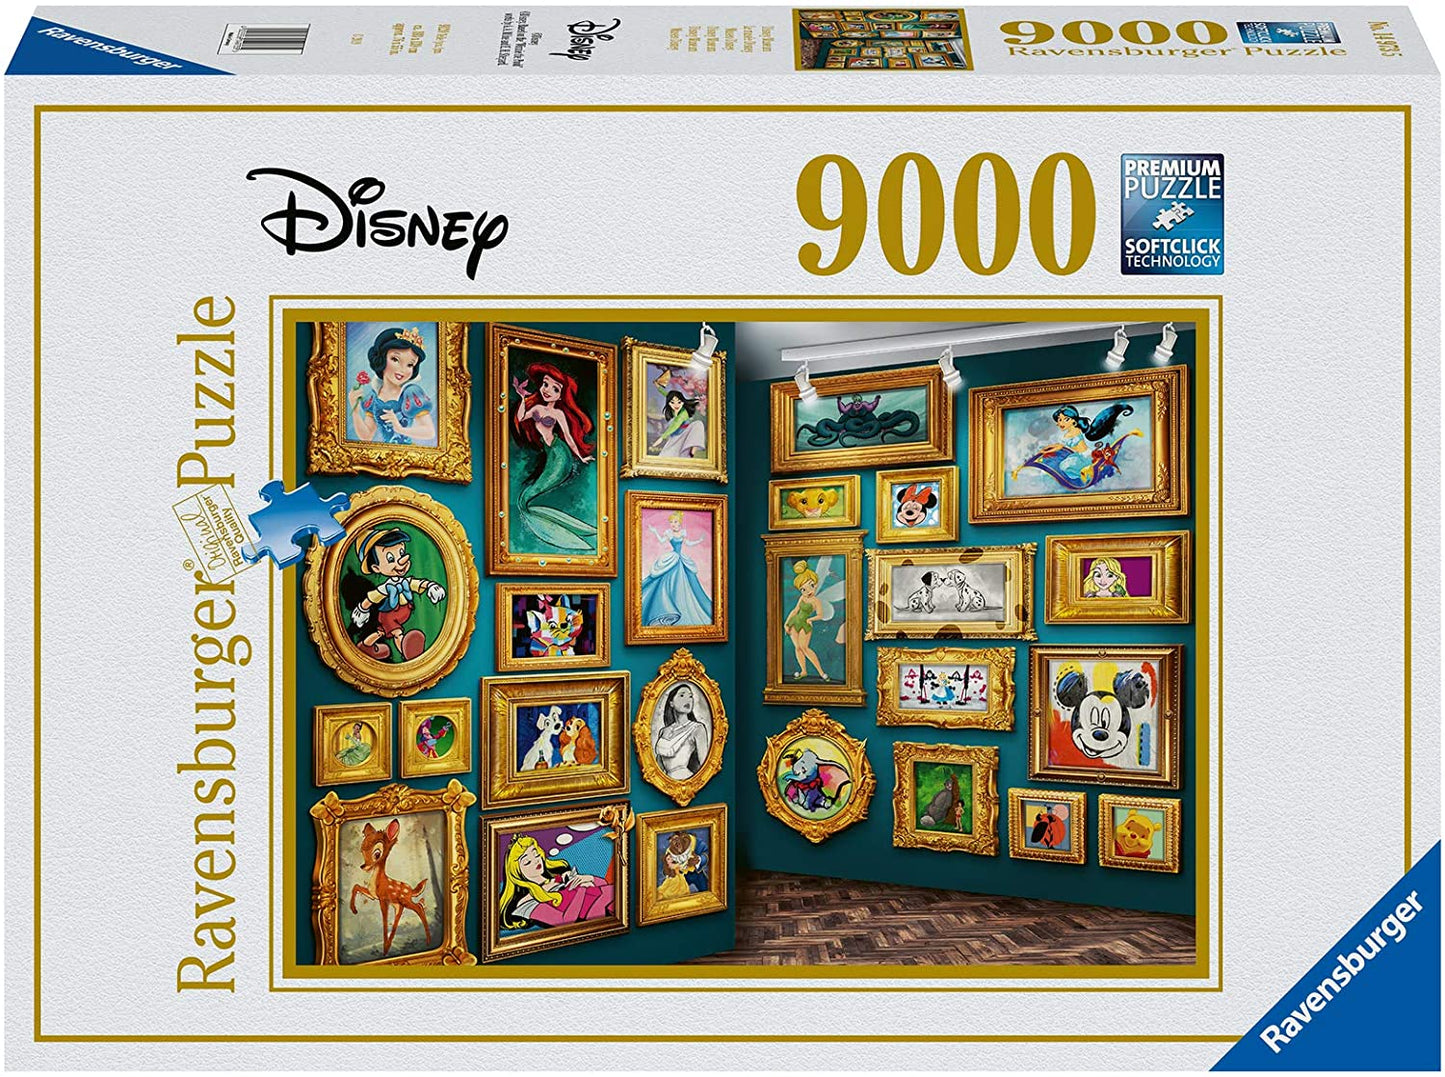 Disney Museum van Disney, puzzel van 9000 stukjes